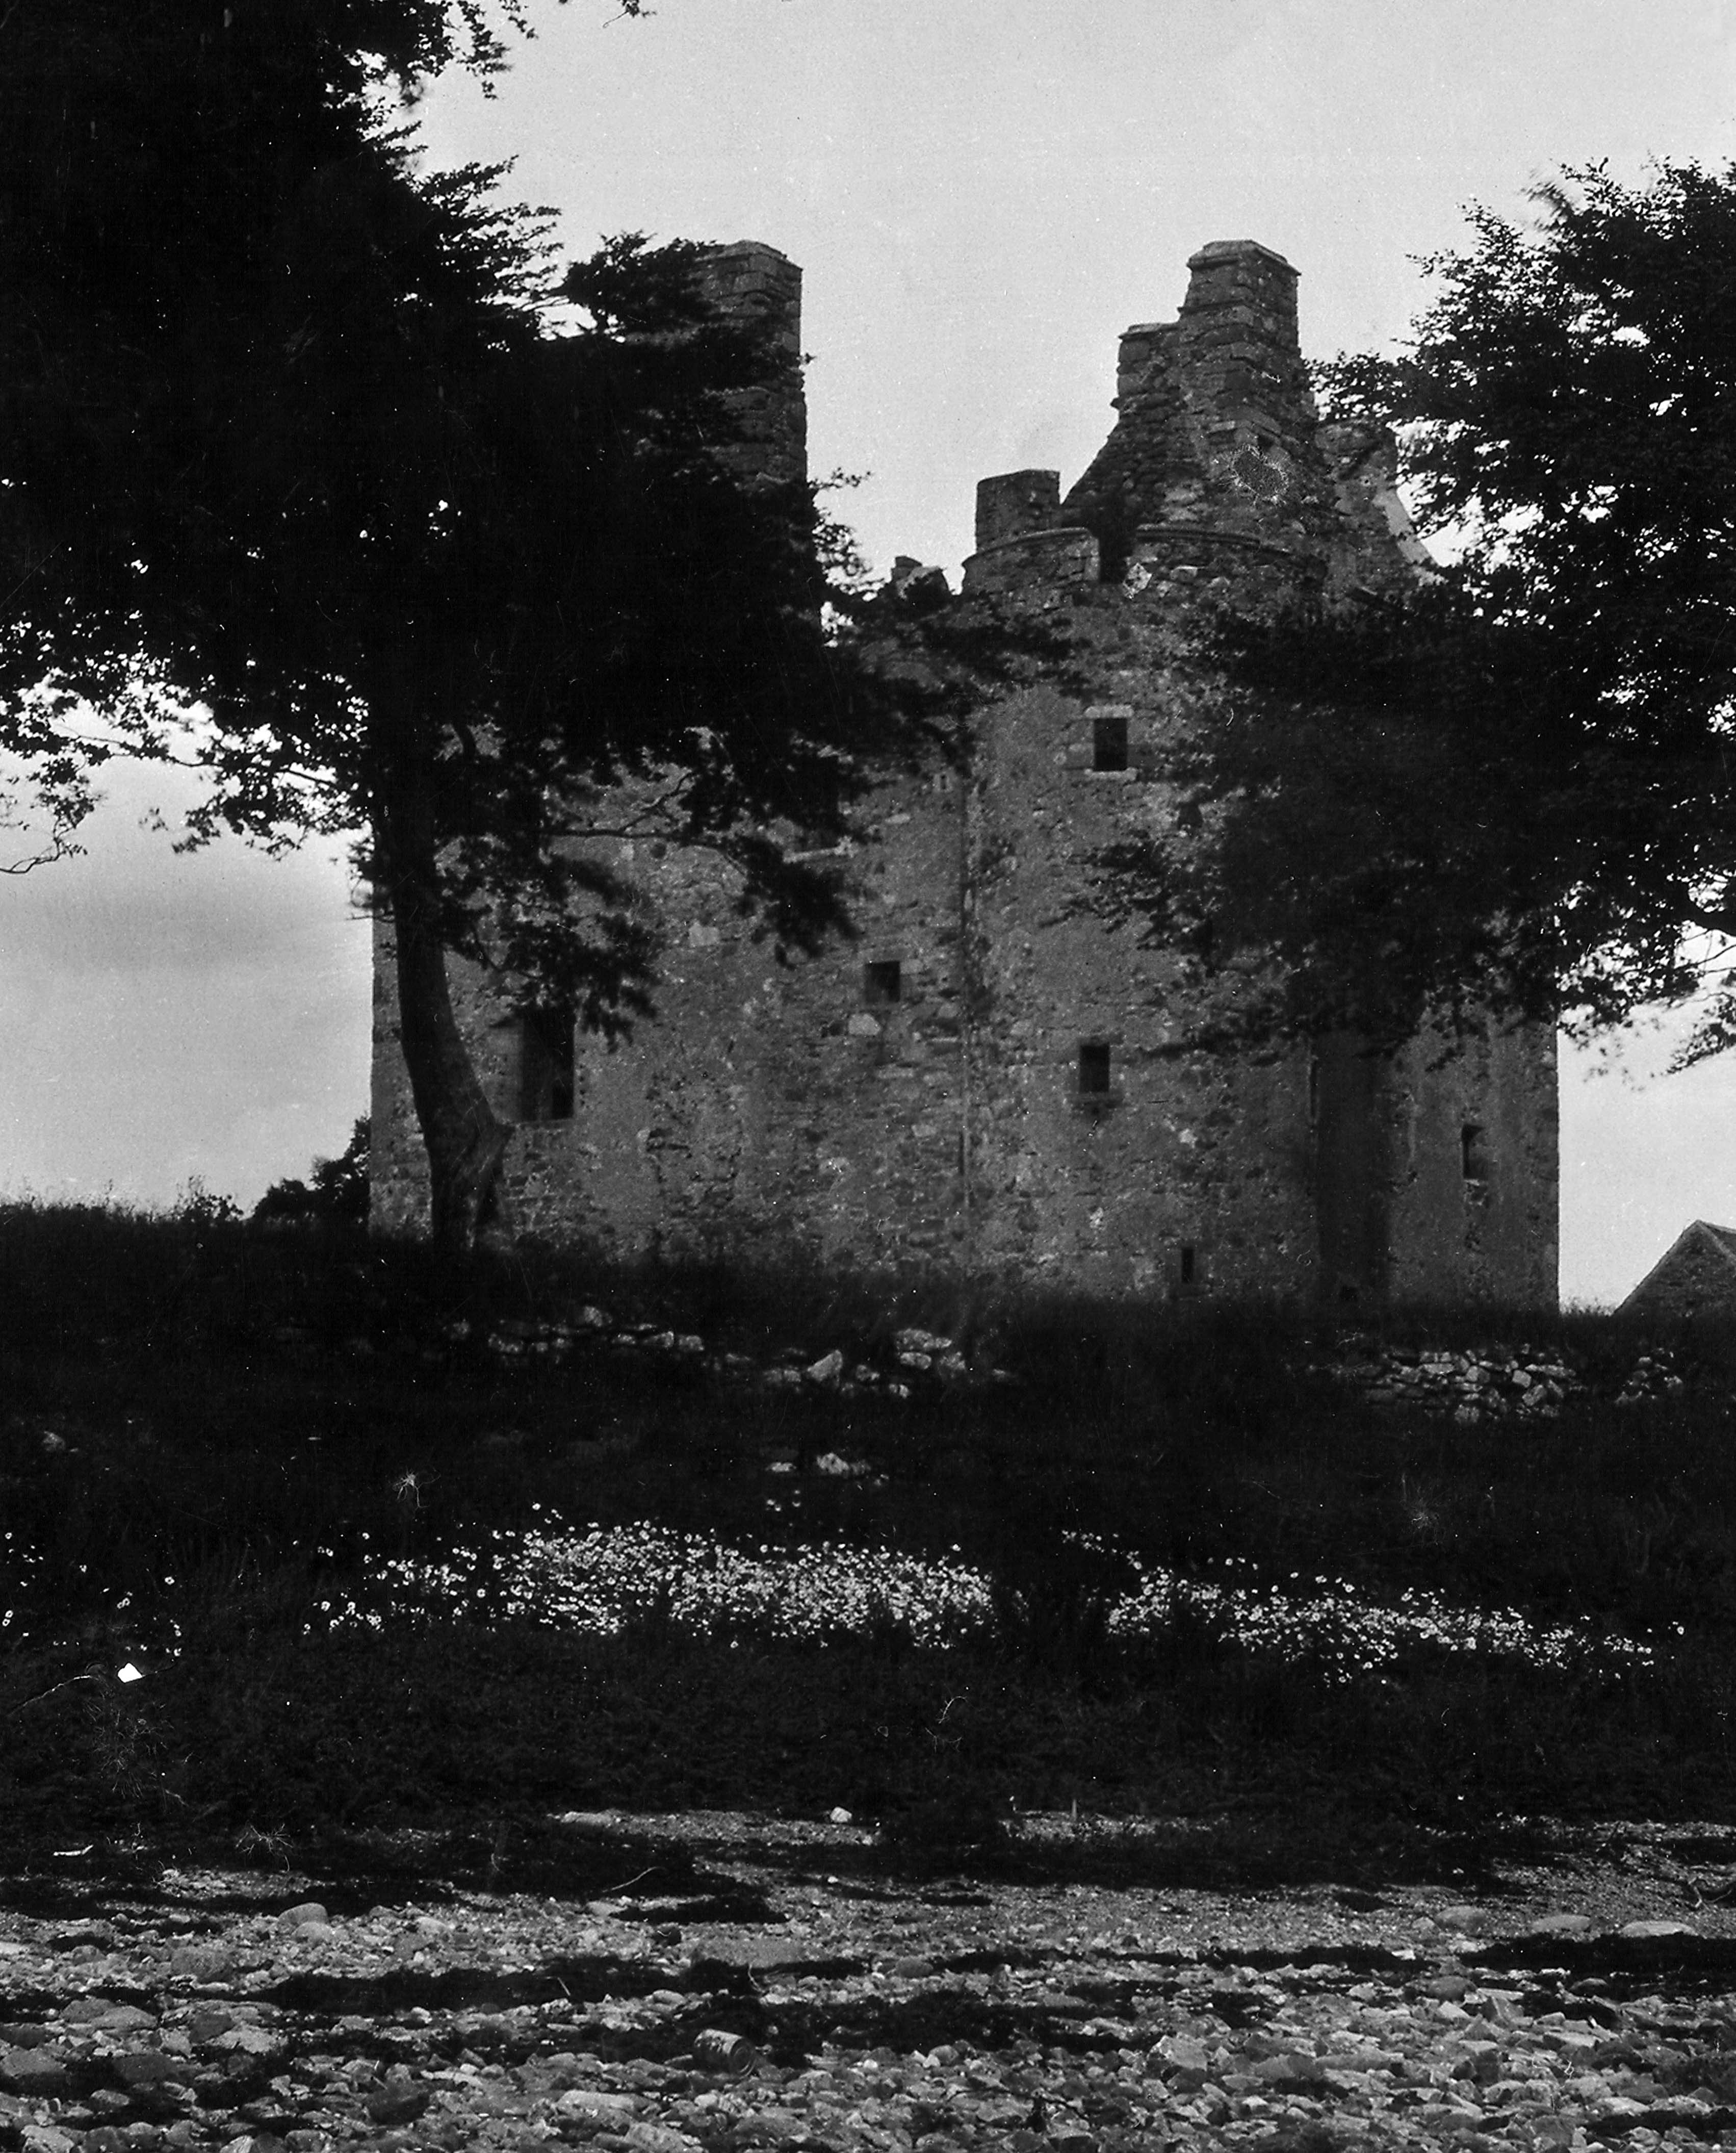 Dunderave Castle